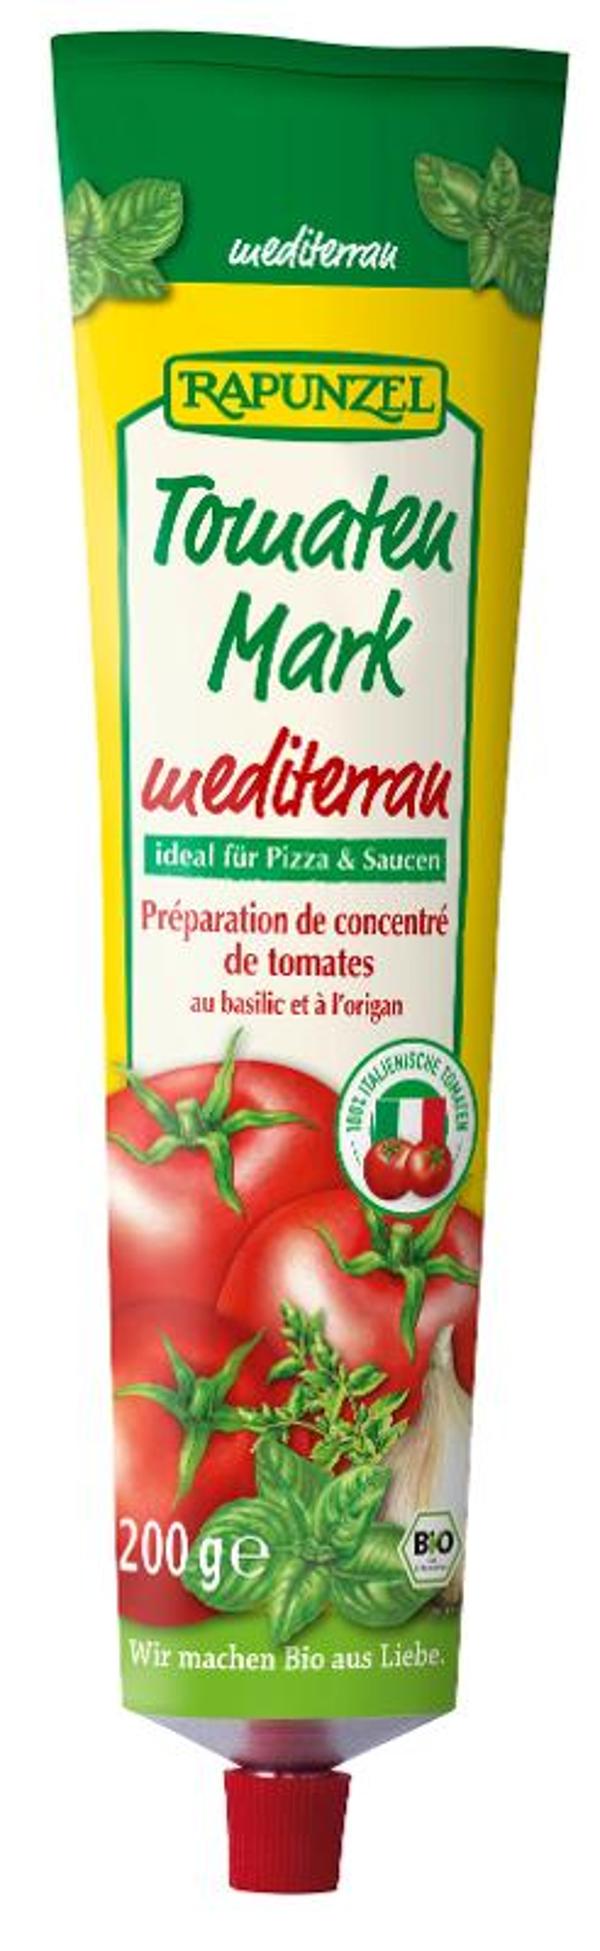 Produktfoto zu Tomatenmark Mediterran in der Tube